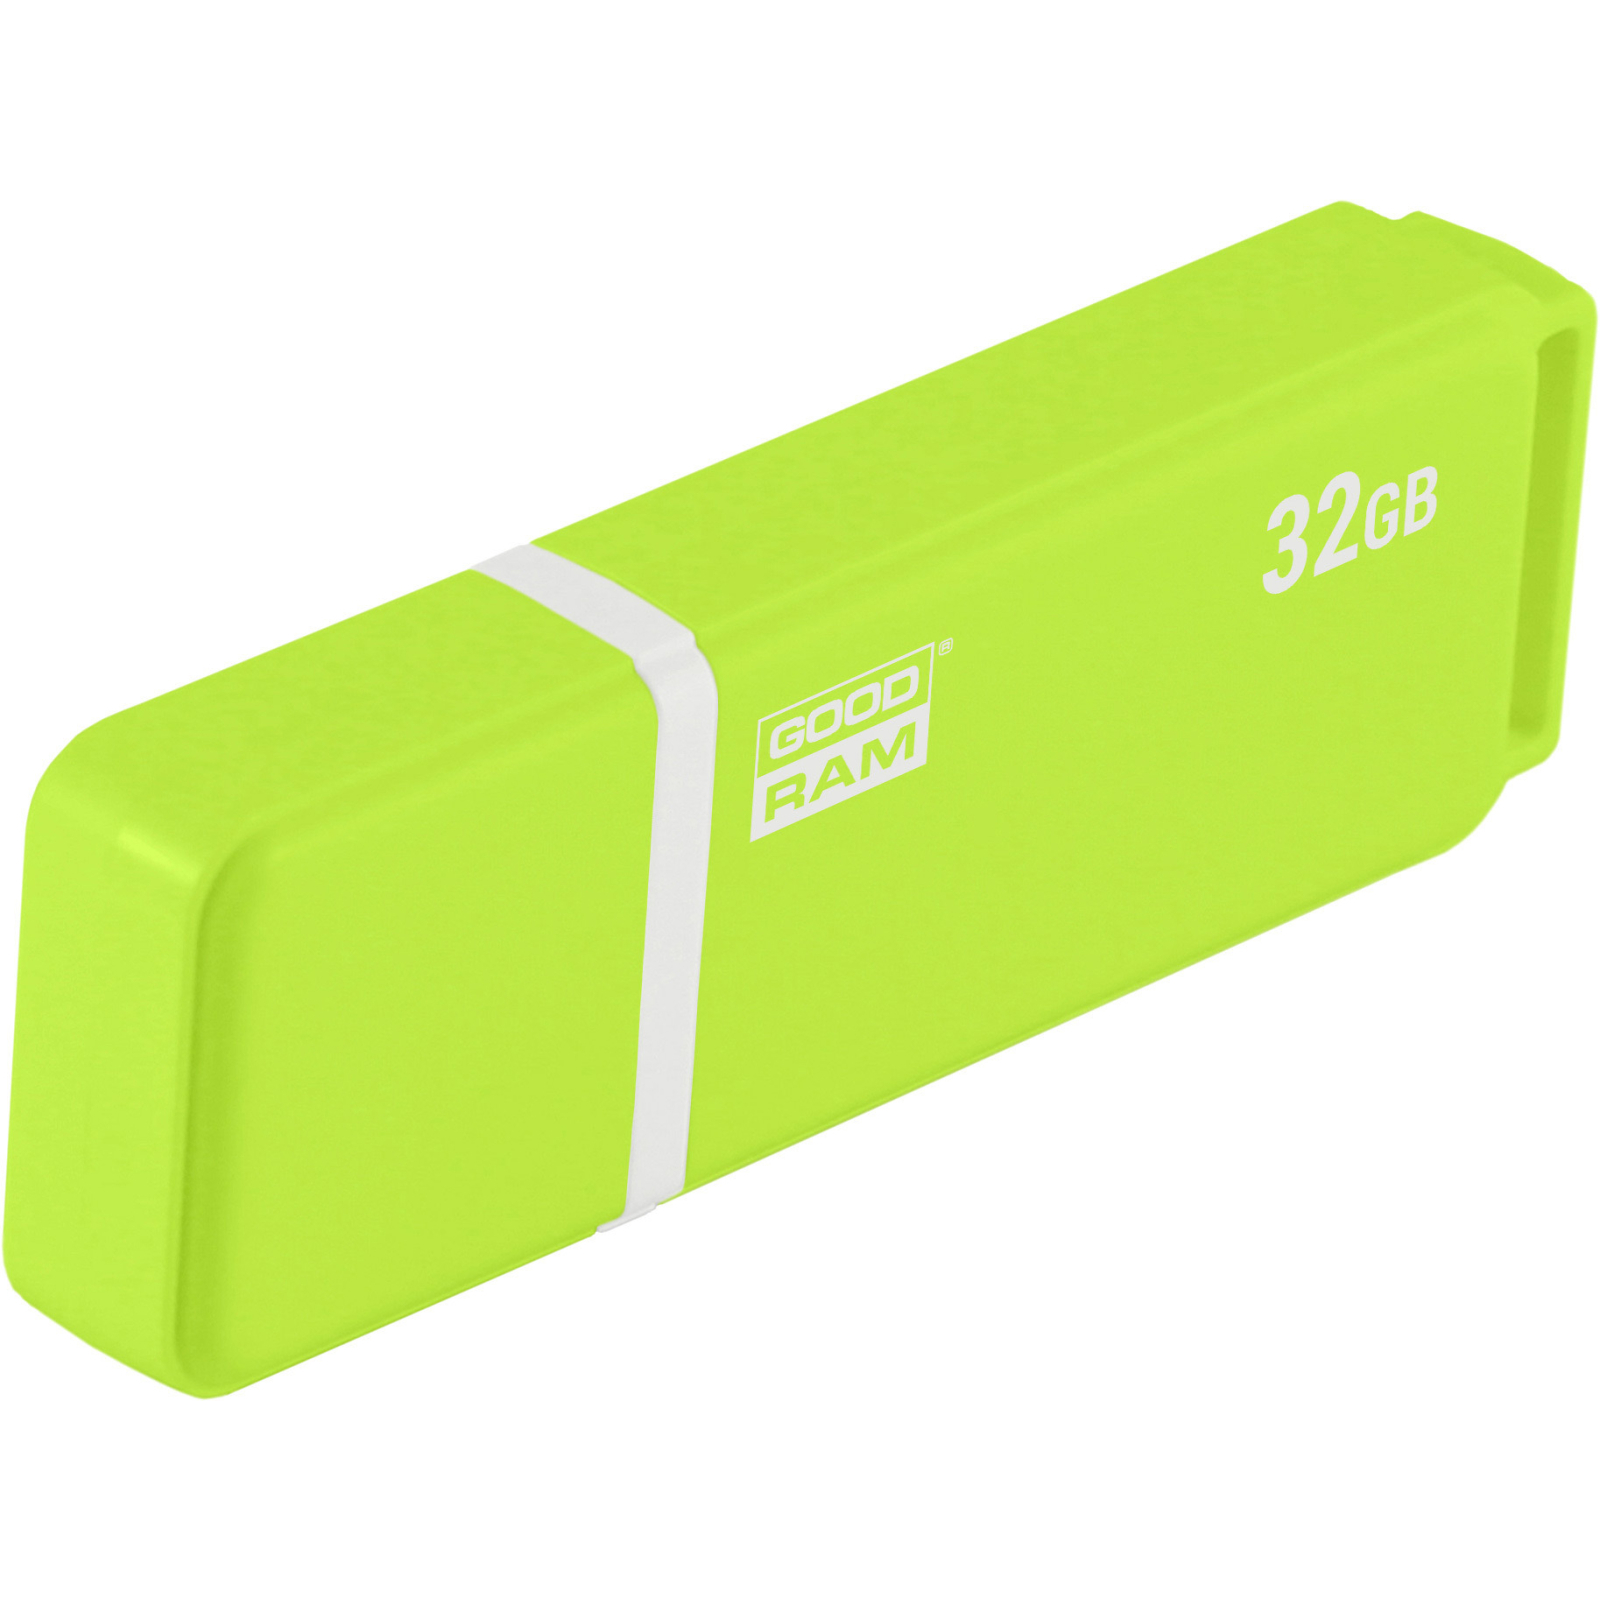 USB флеш накопитель Goodram 32GB UMO2 Orange Green USB 2.0 (UMO2-0320OGR11) изображение 2